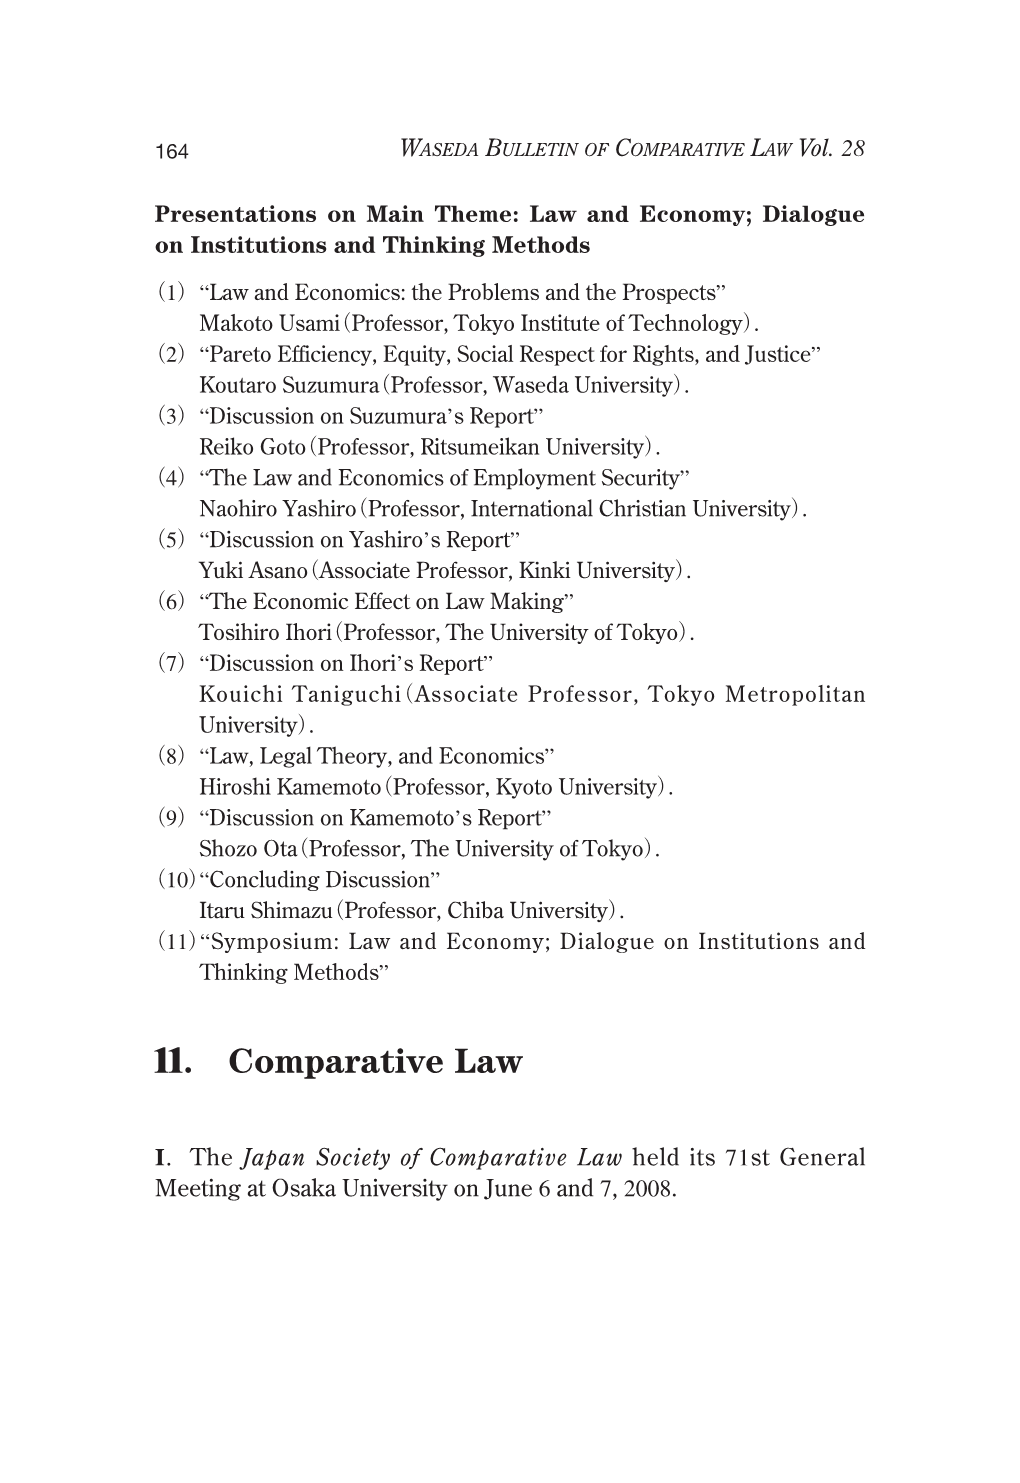 11. Comparative Law